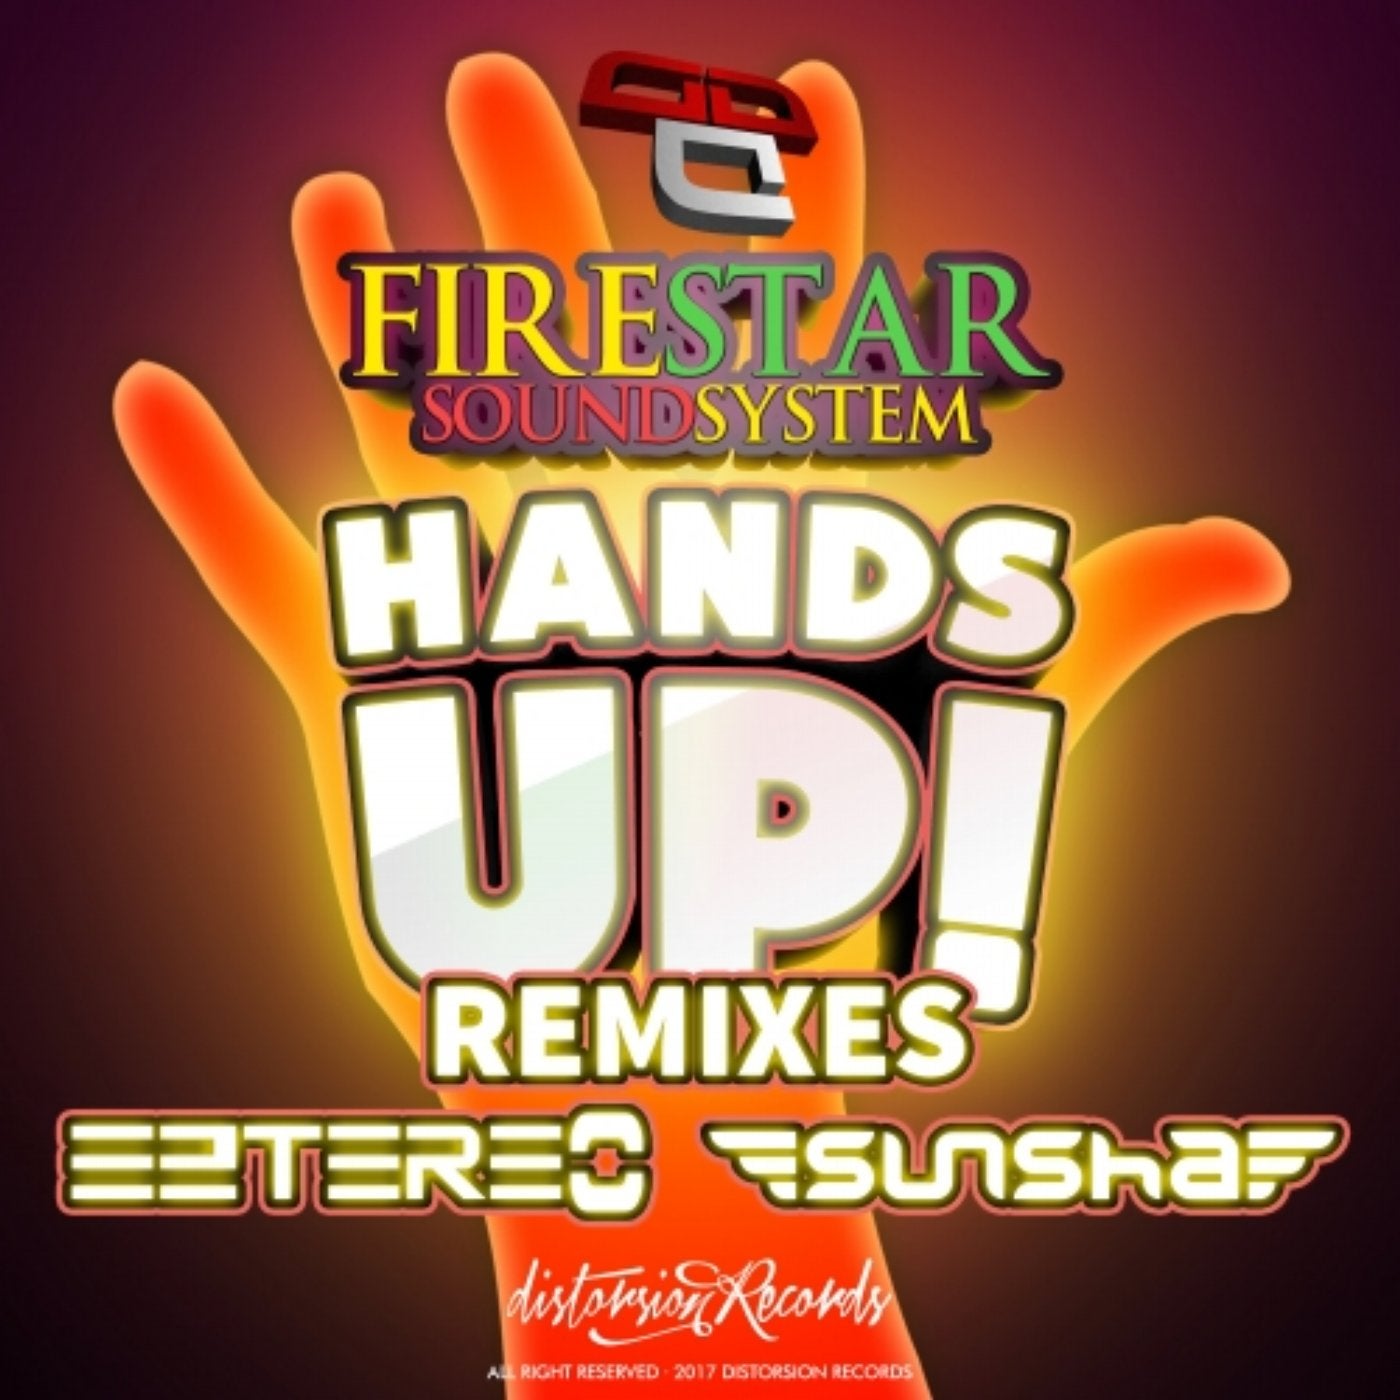 Hands UP Remixes